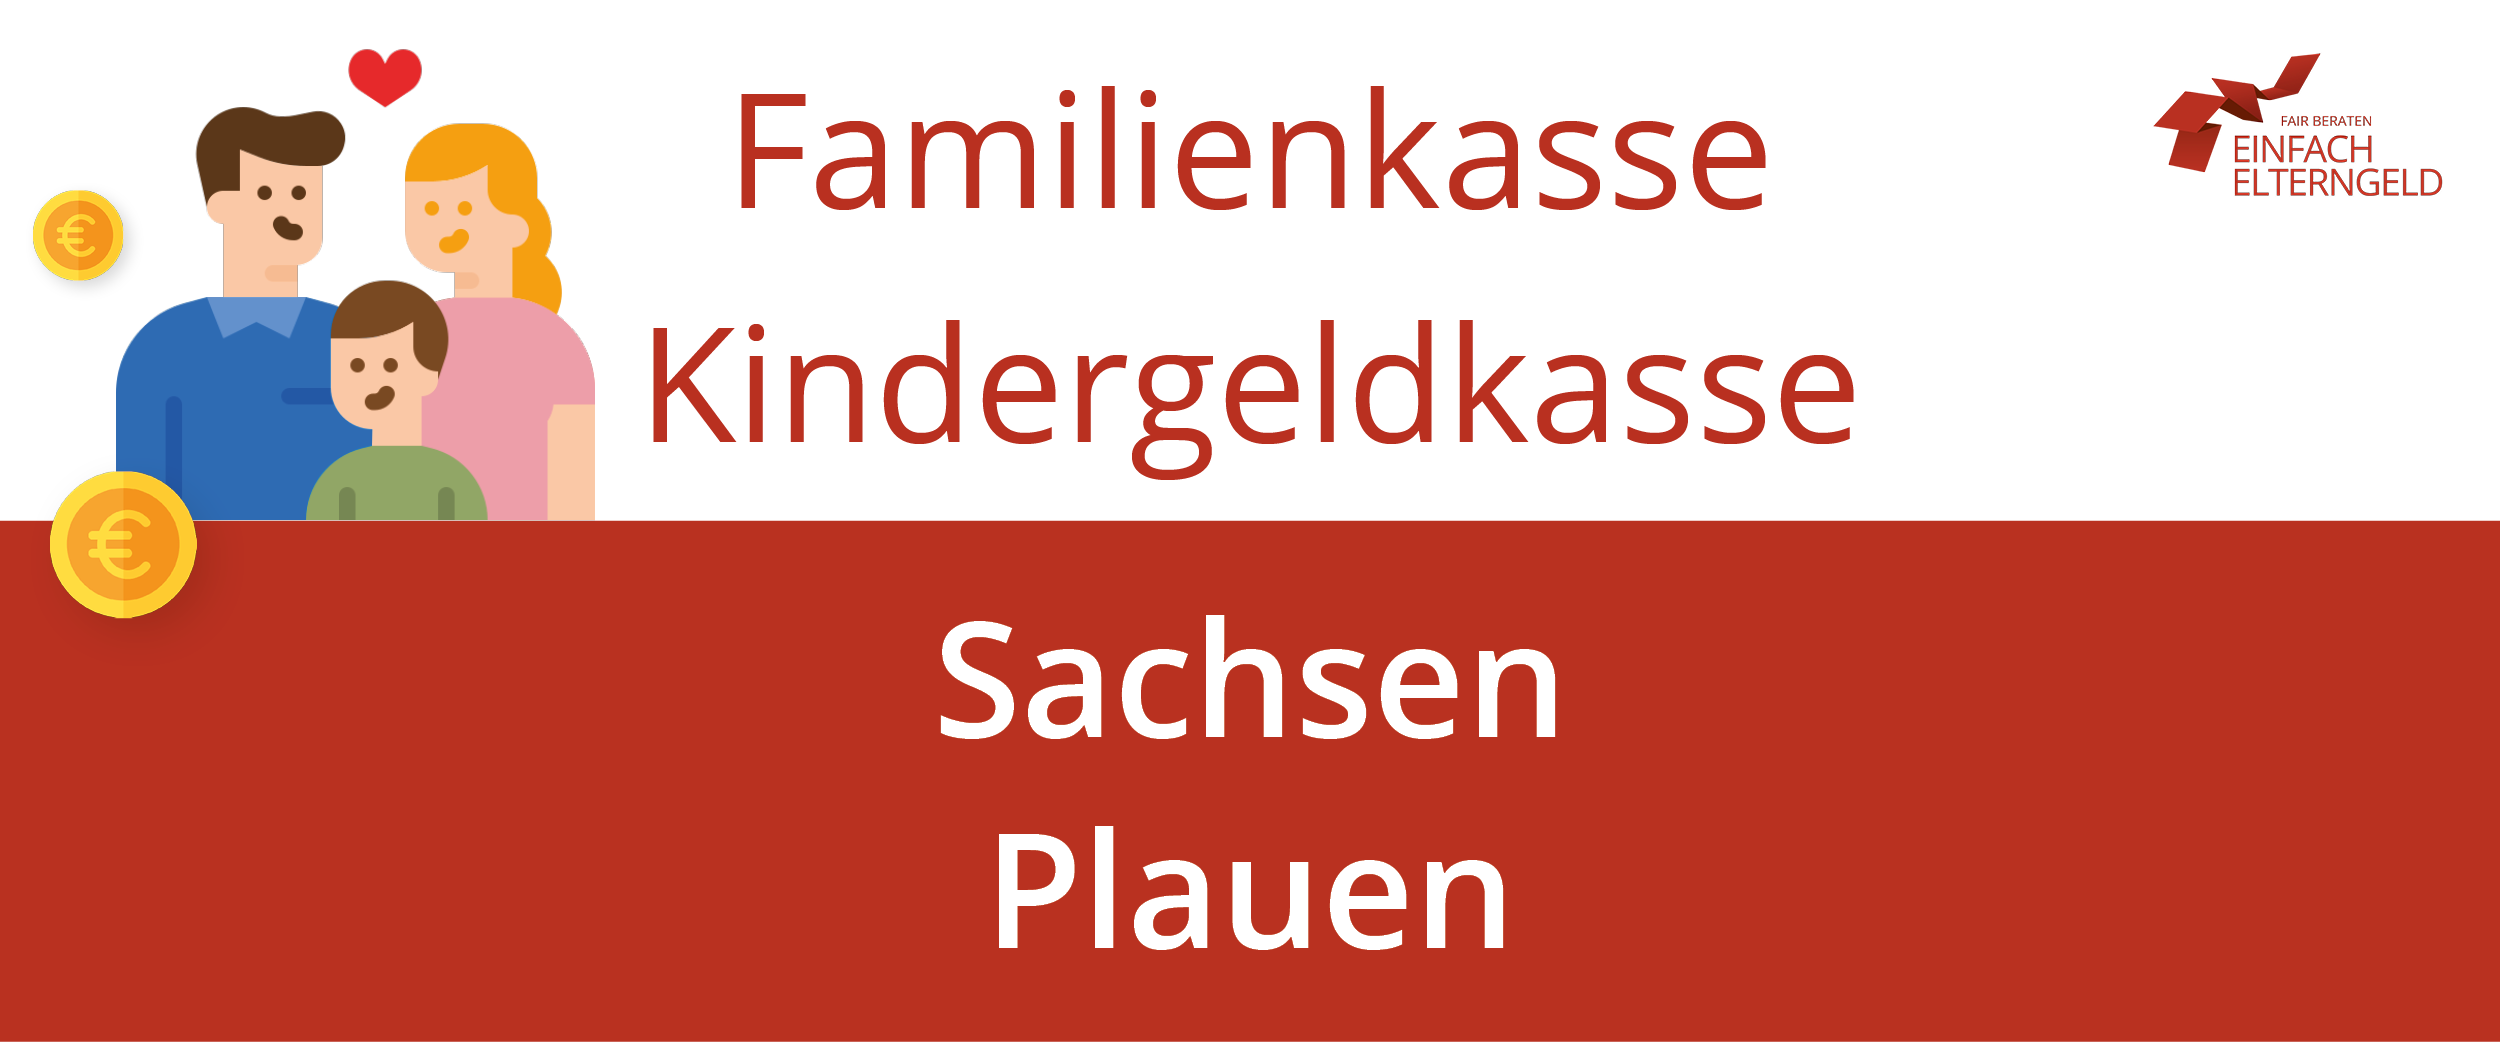 Familienkasse Kindergeldkasse Sachsen Plauen -So erreichen Sie Ihre Familienkasse.